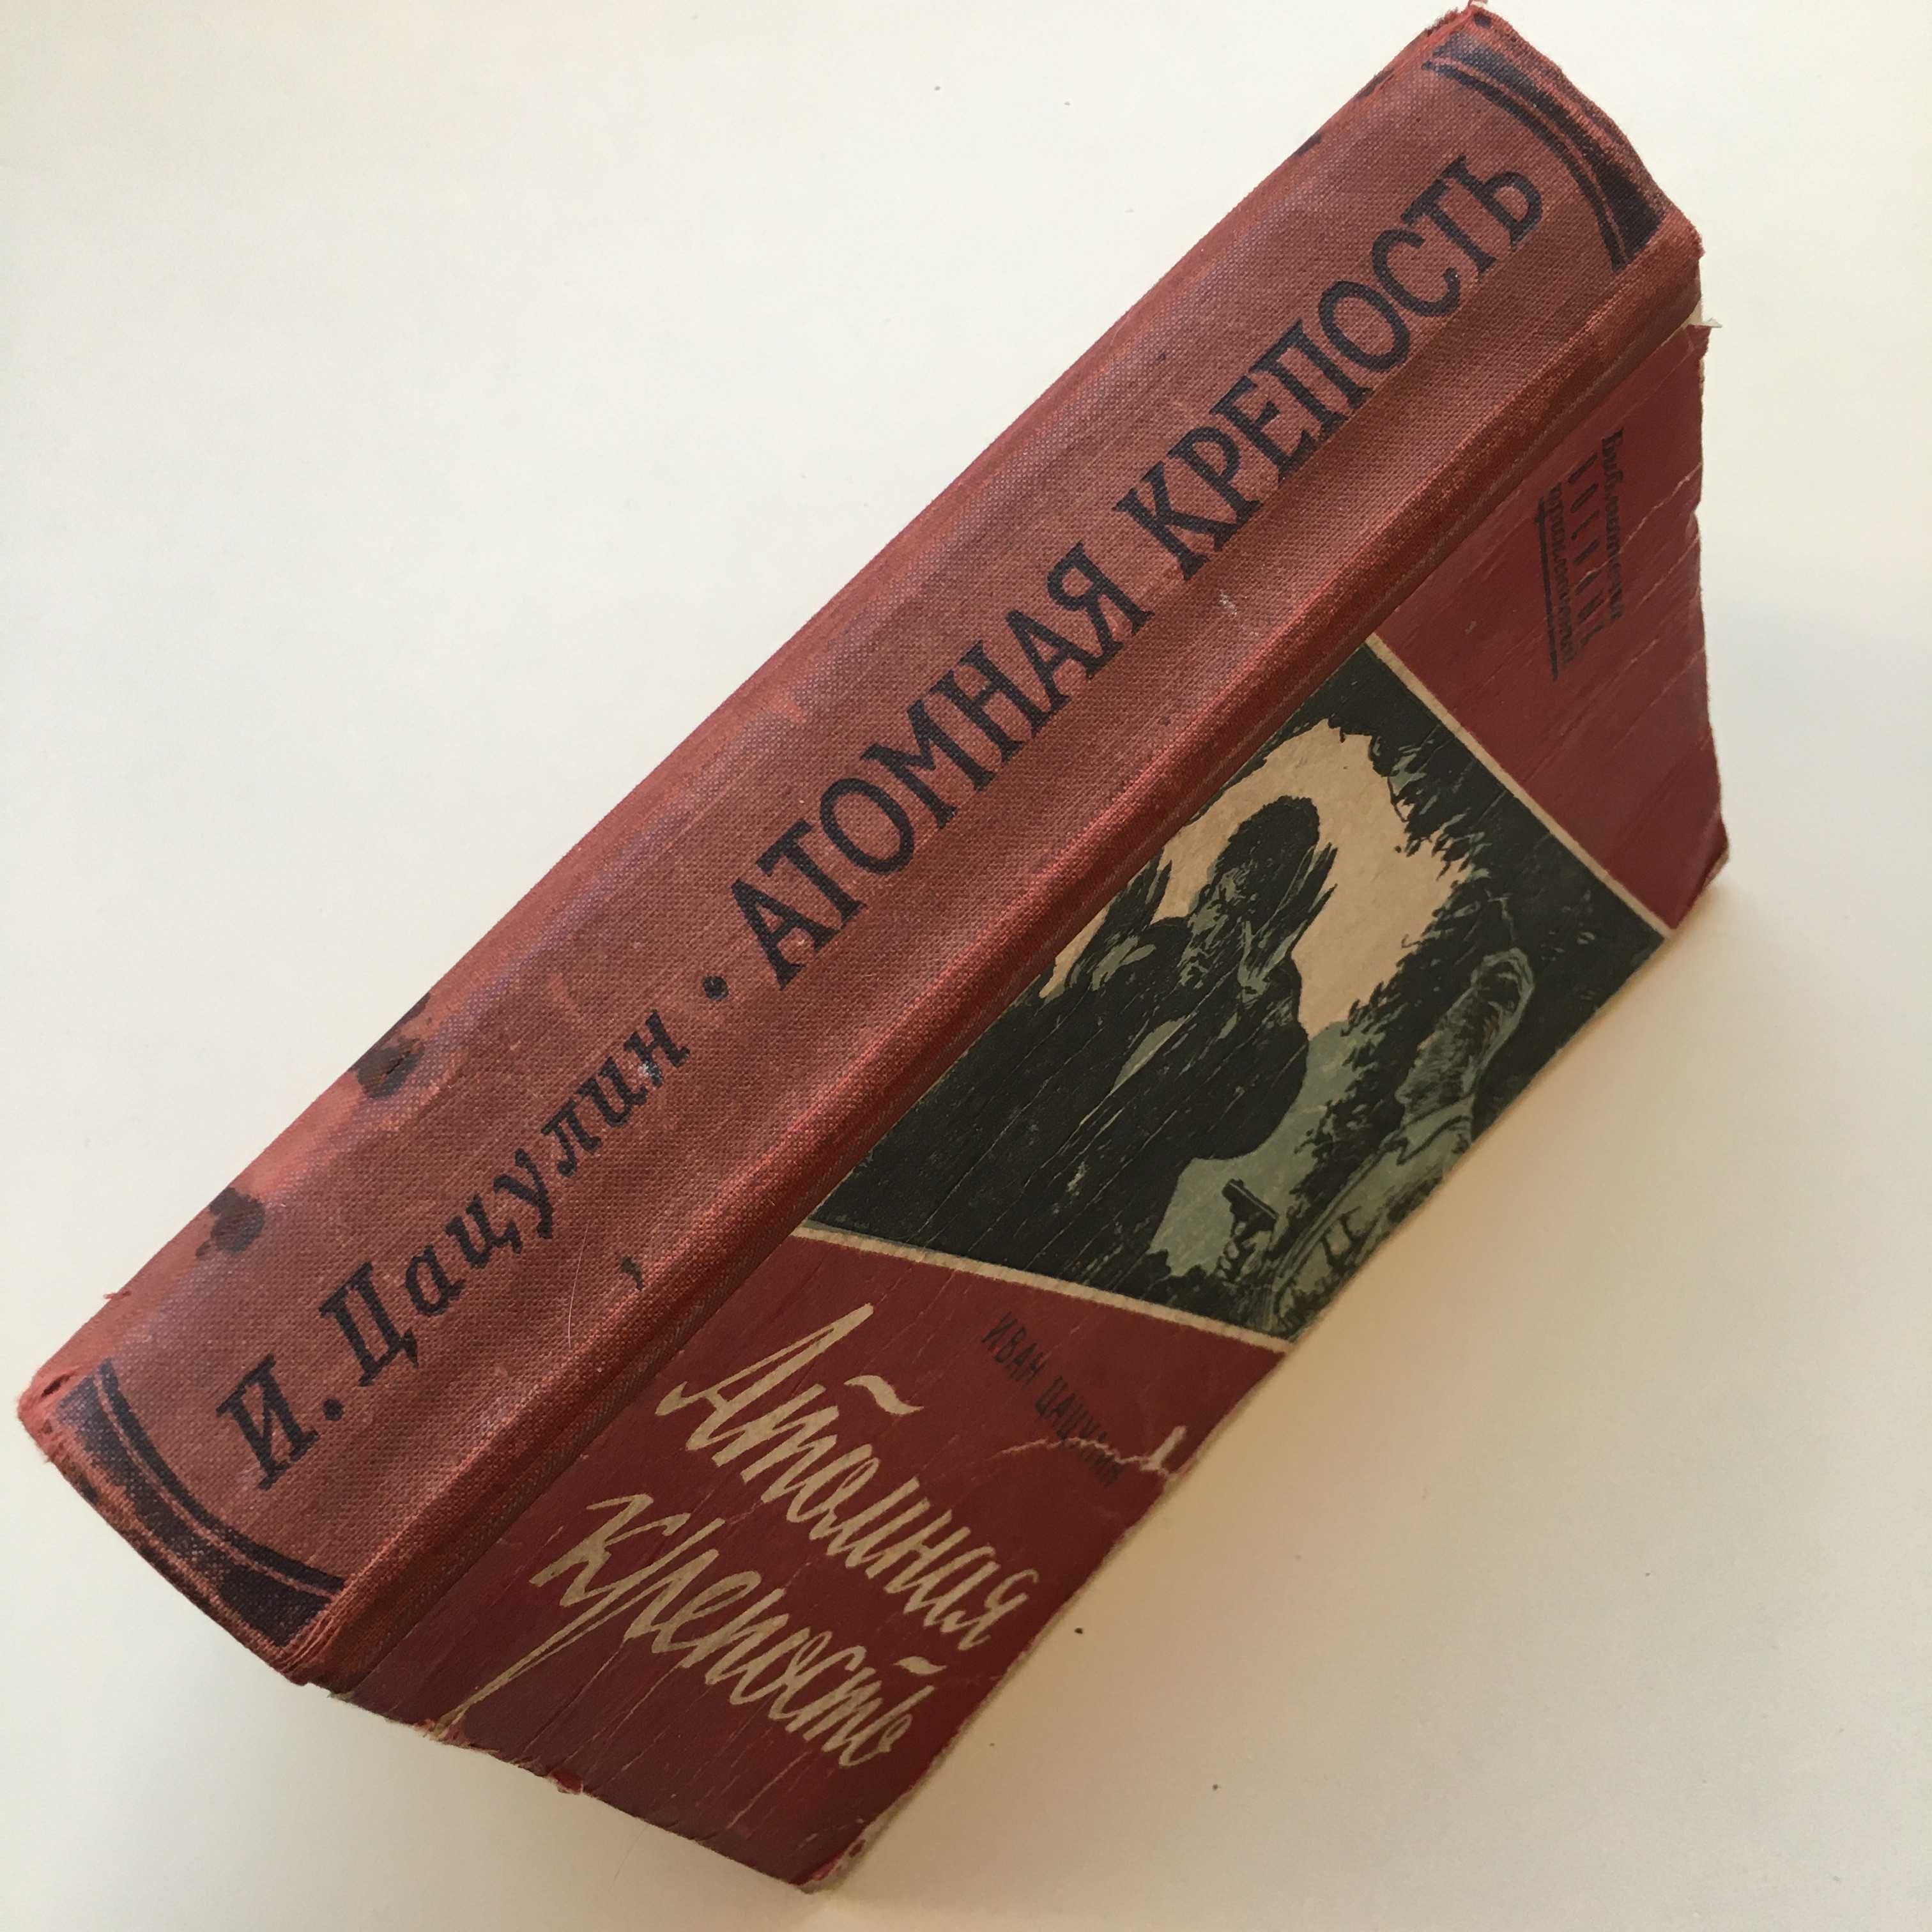 Книга роман "Атомная крепость" Иван Цацулин 1958 год издания